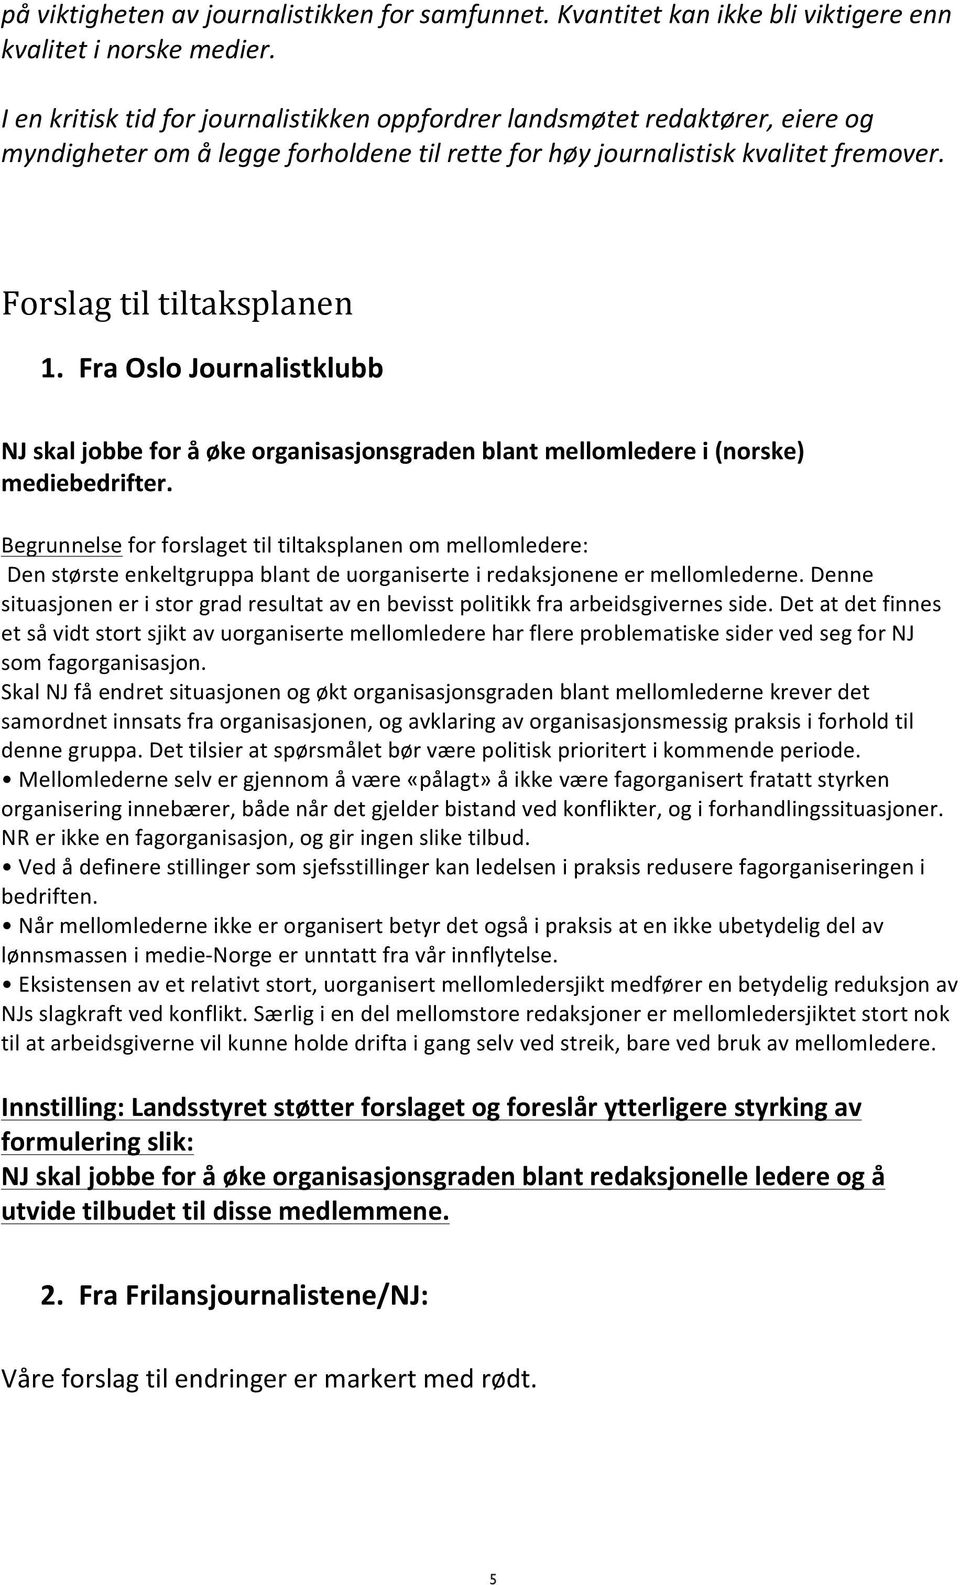 Fra Oslo Journalistklubb NJ skal jobbe for å øke organisasjonsgraden blant mellomledere i (norske) mediebedrifter.